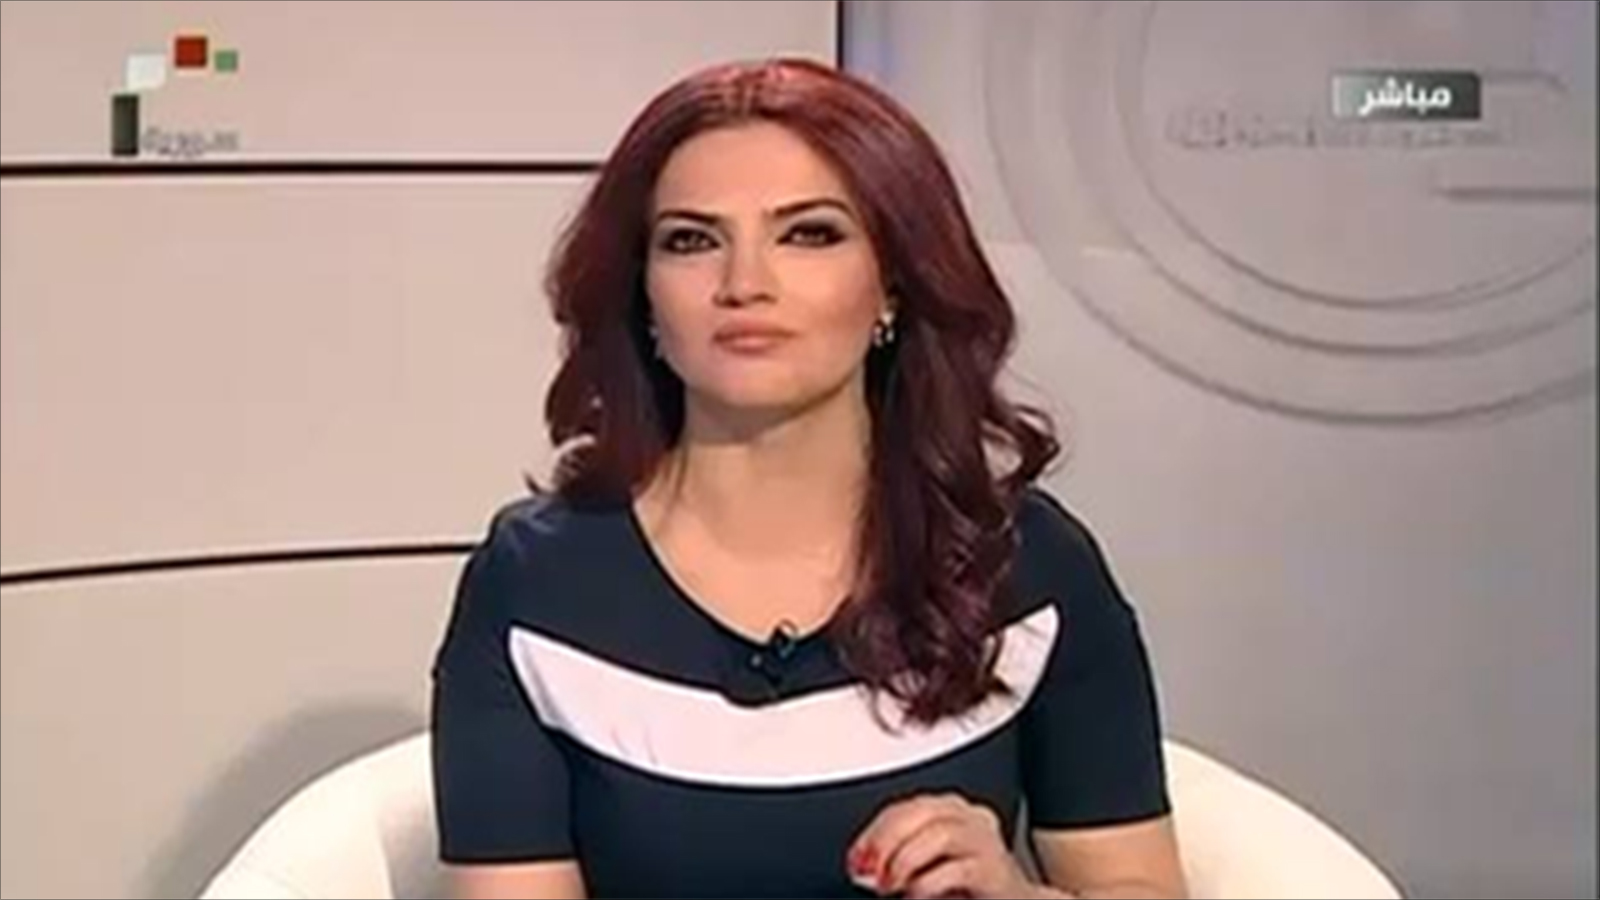 درعا:"الامن السياسي"يعتقل زوجة معارض..وكنانة حويجة تُطلقها